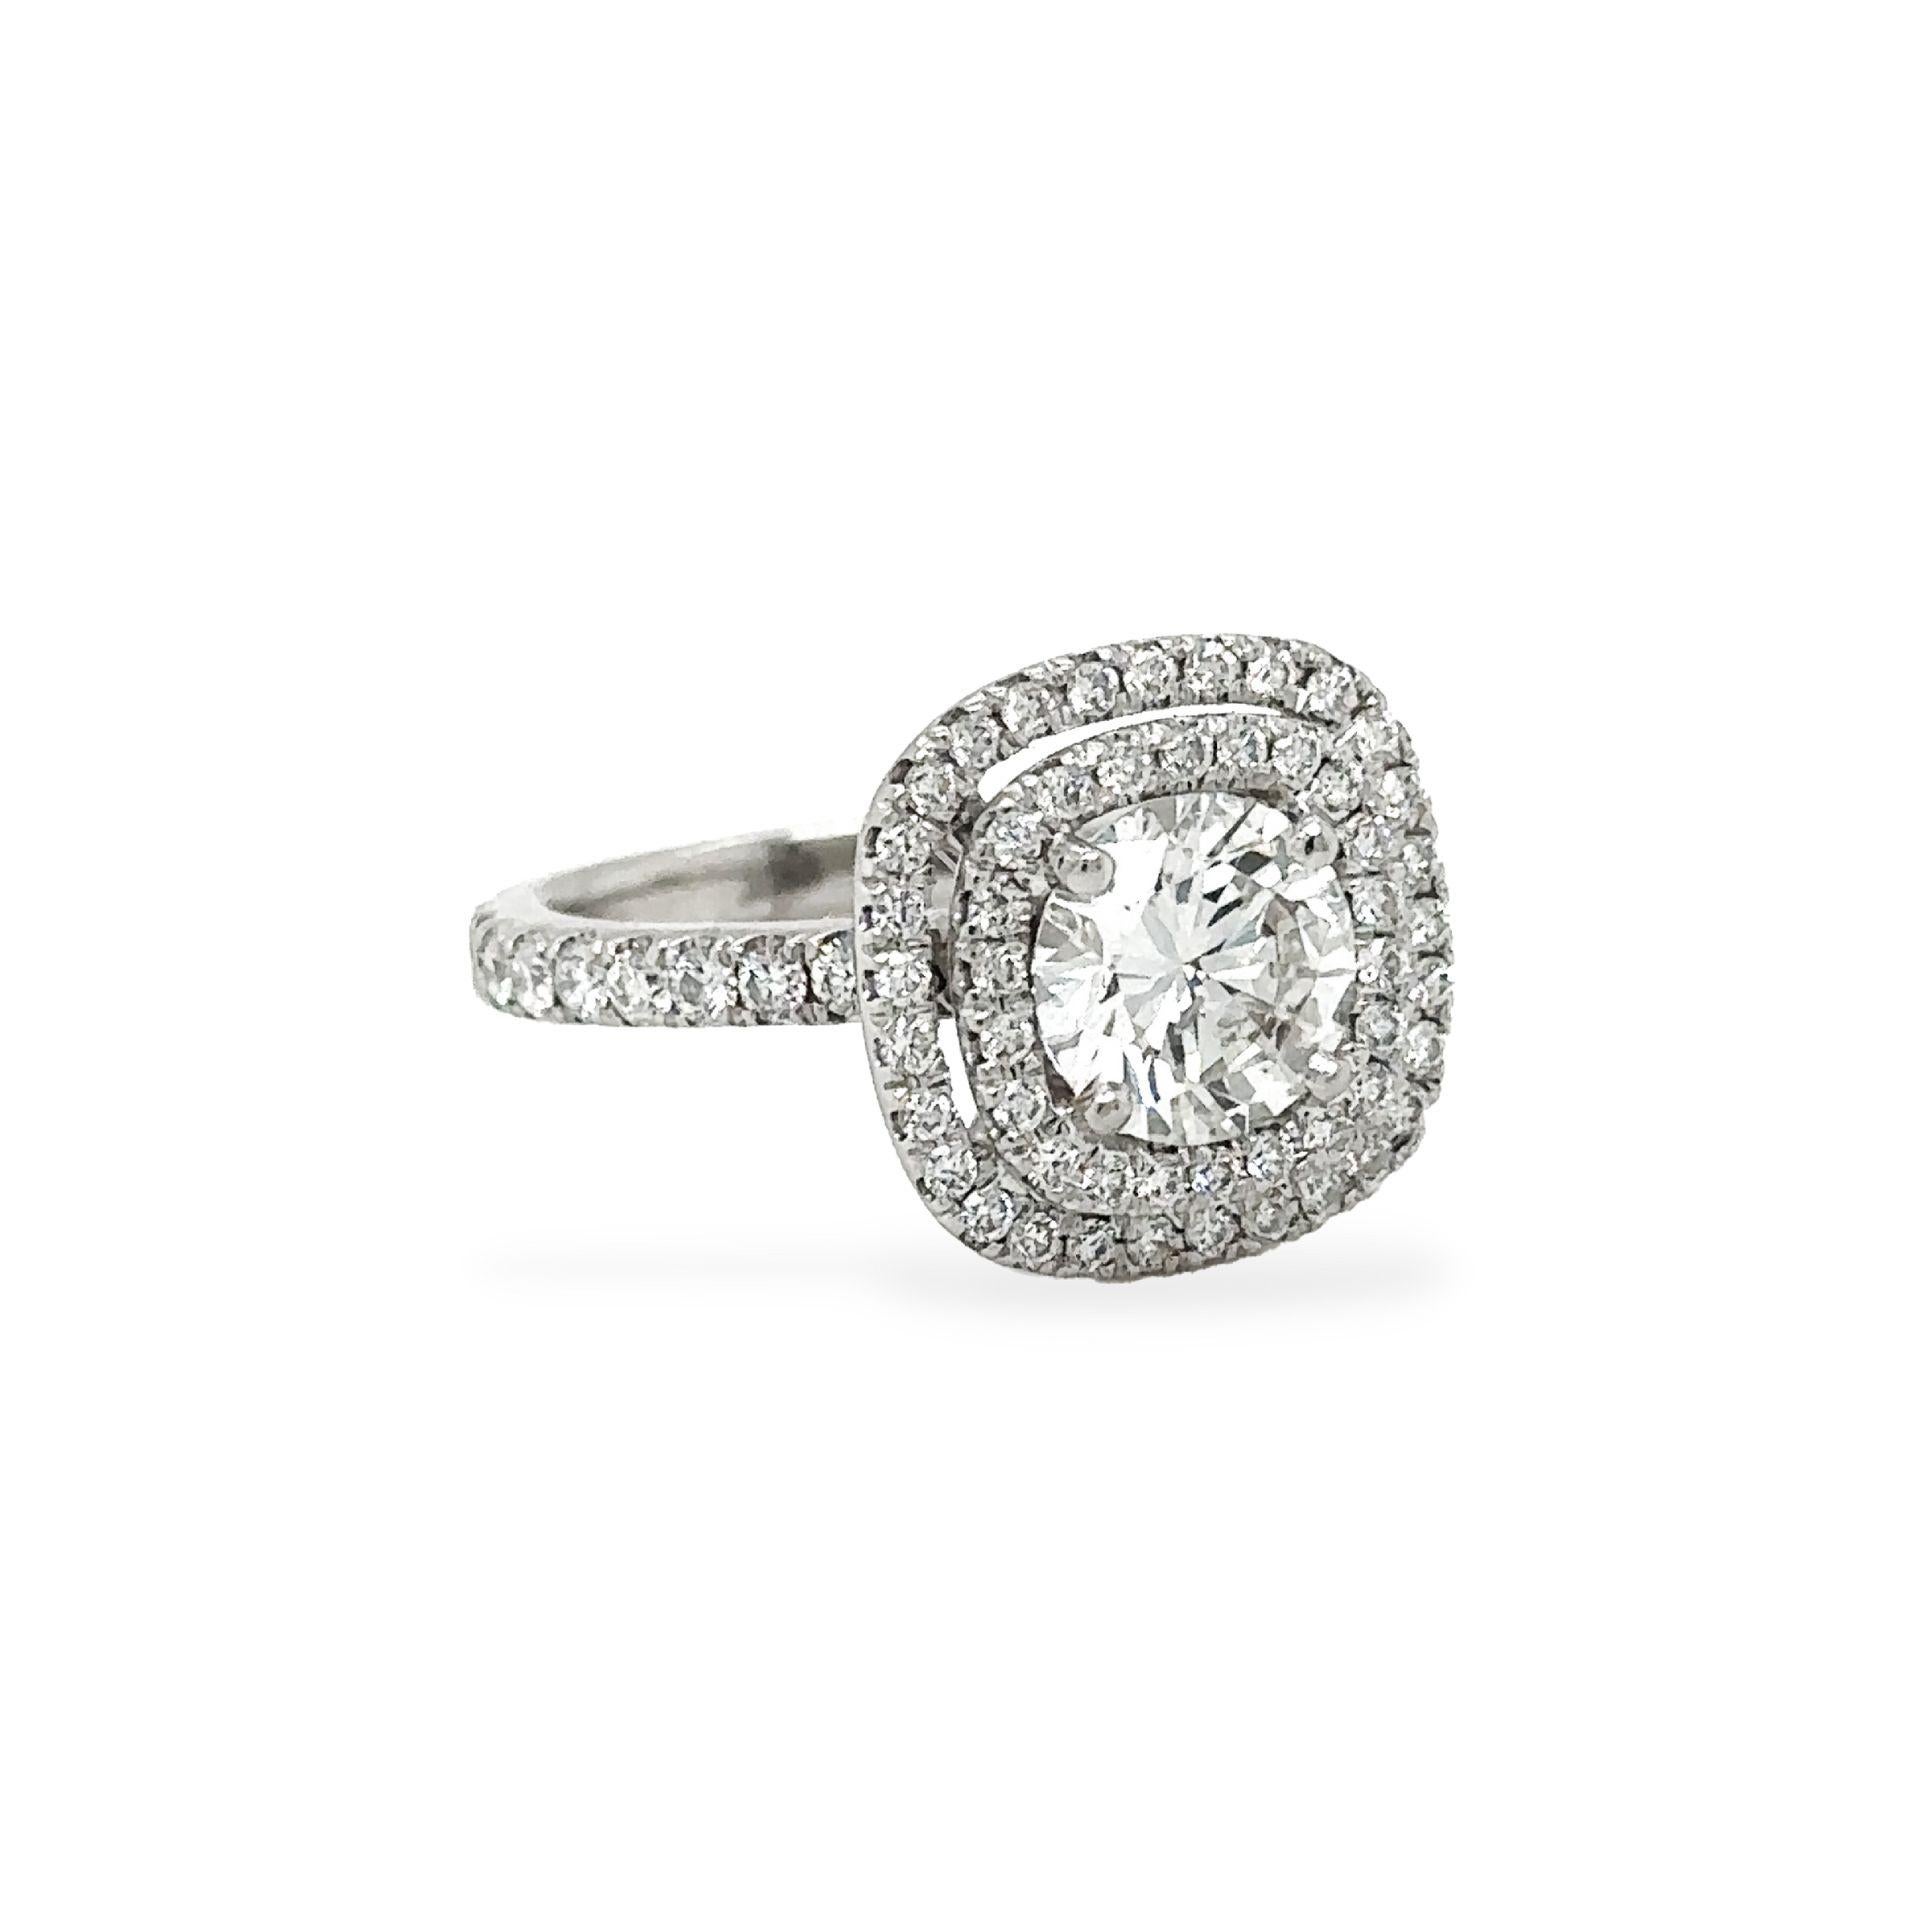 1.25 carat diamond ring price